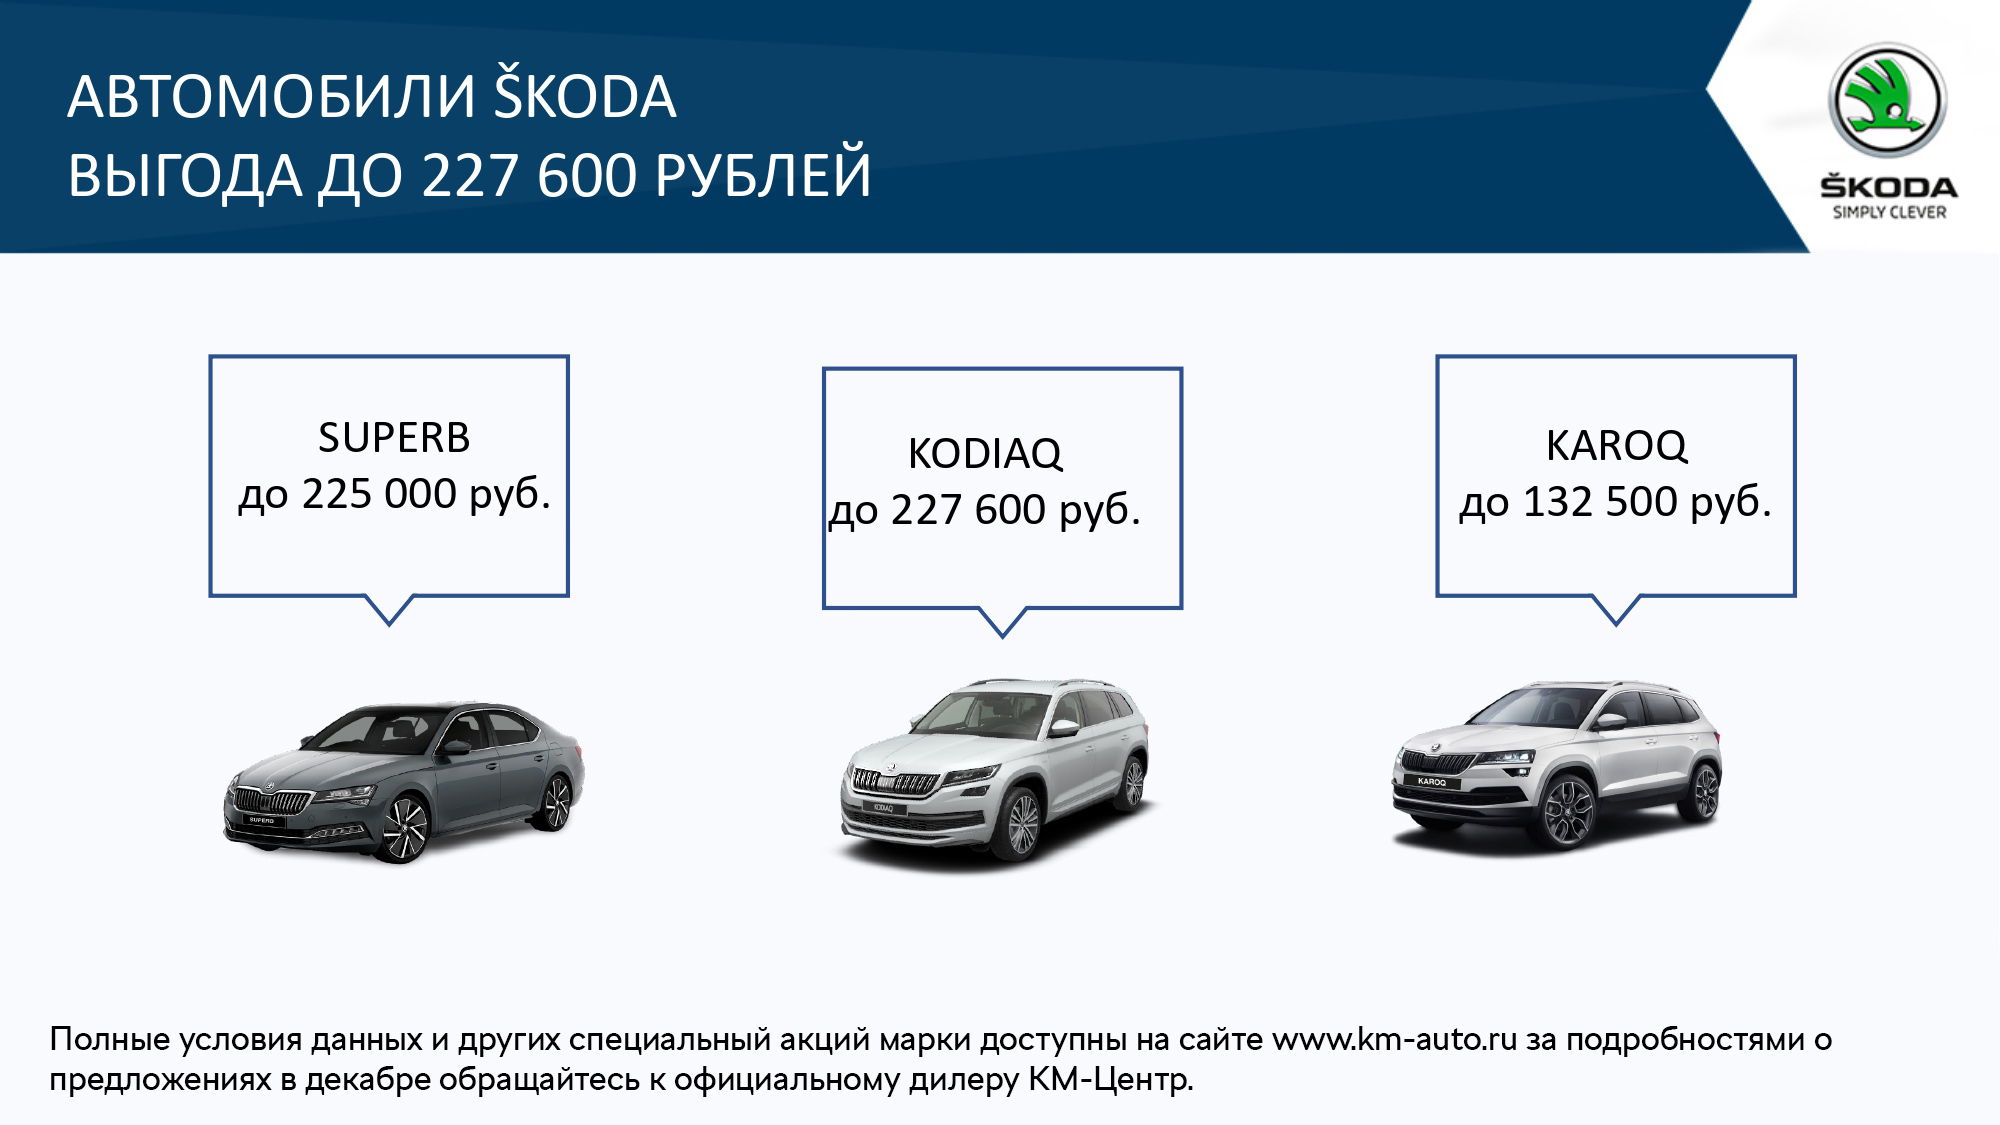 Максимальные выгода на автомобили SKODA в декабре 2020